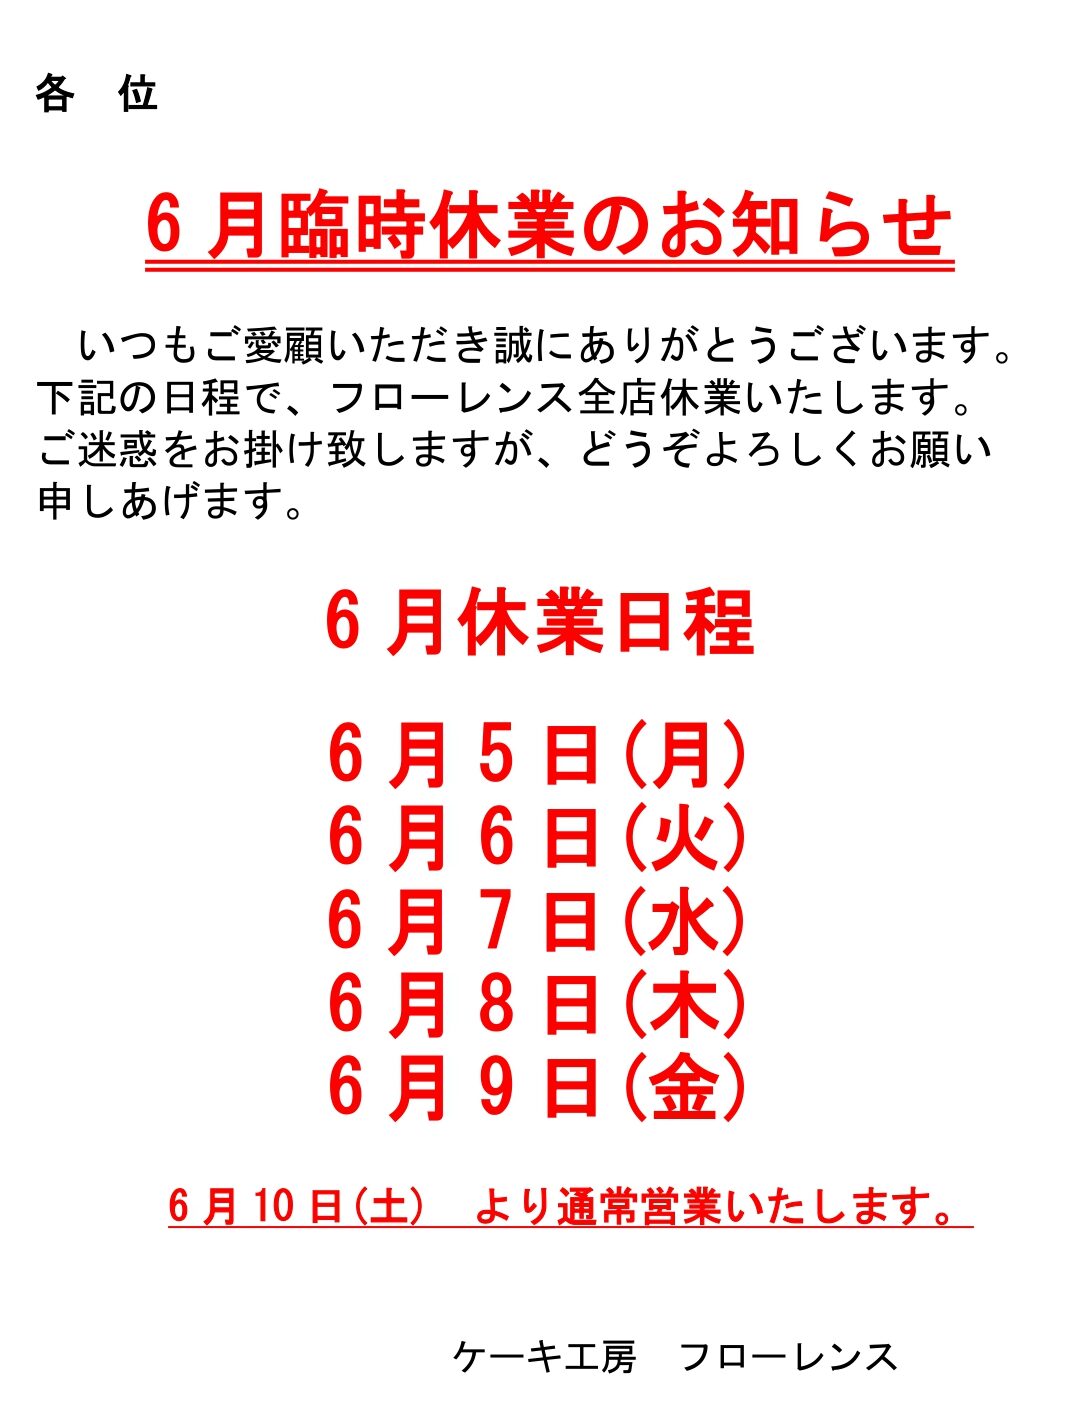 全店臨時休業のお知らせ 6/5(月)-6/9(金)